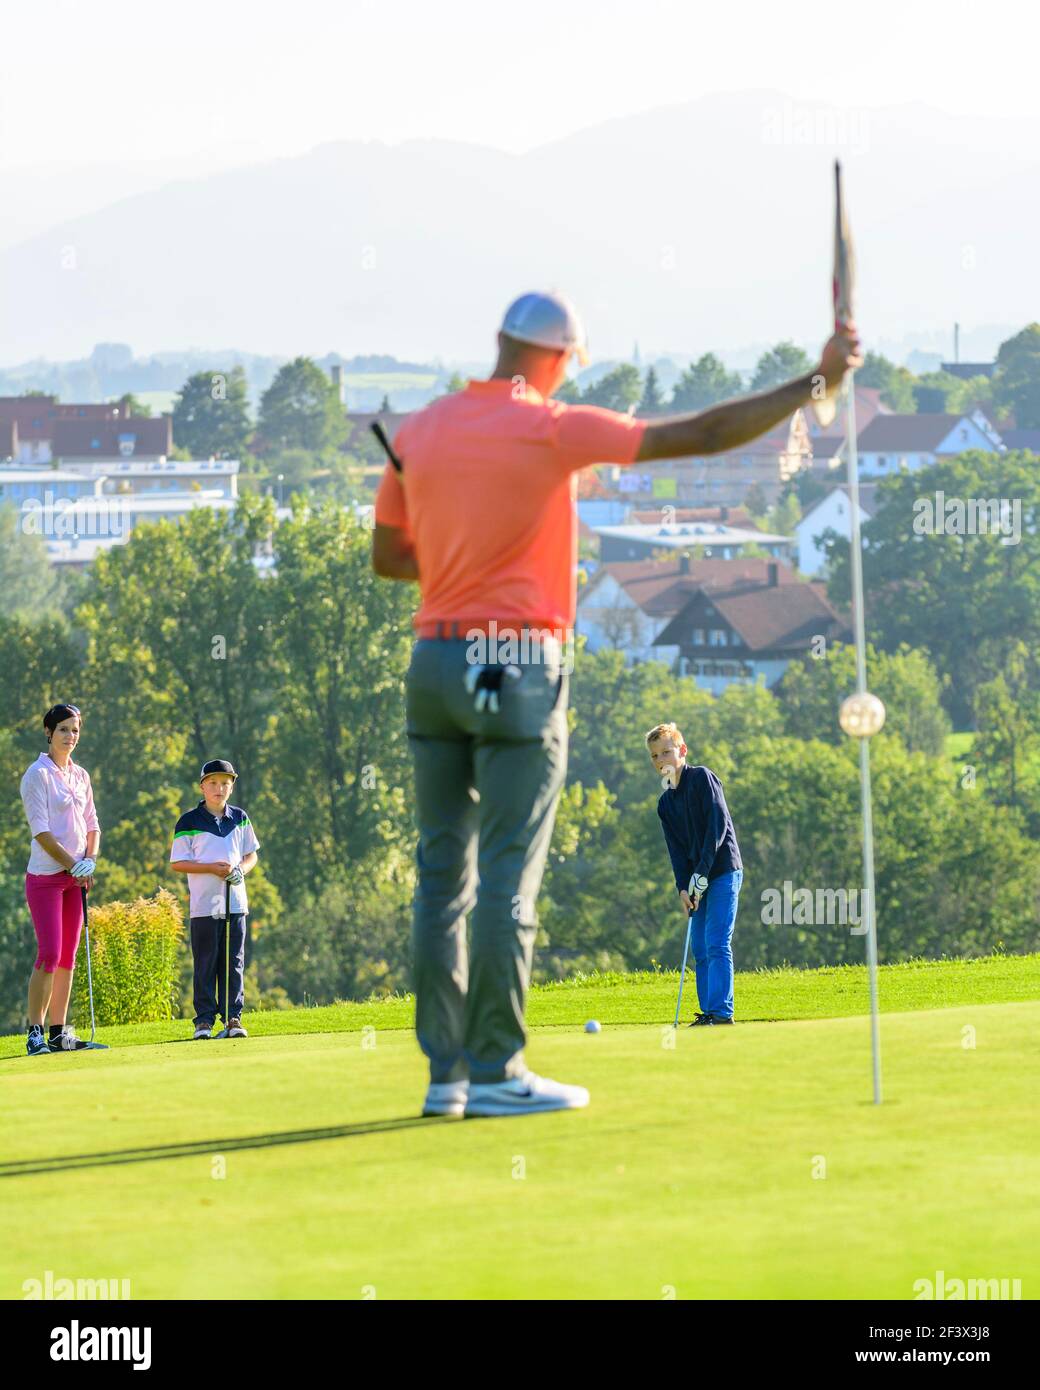 Talentierte junge Golfer spielen ambitioniert auf einem Golfplatz. Stockfoto